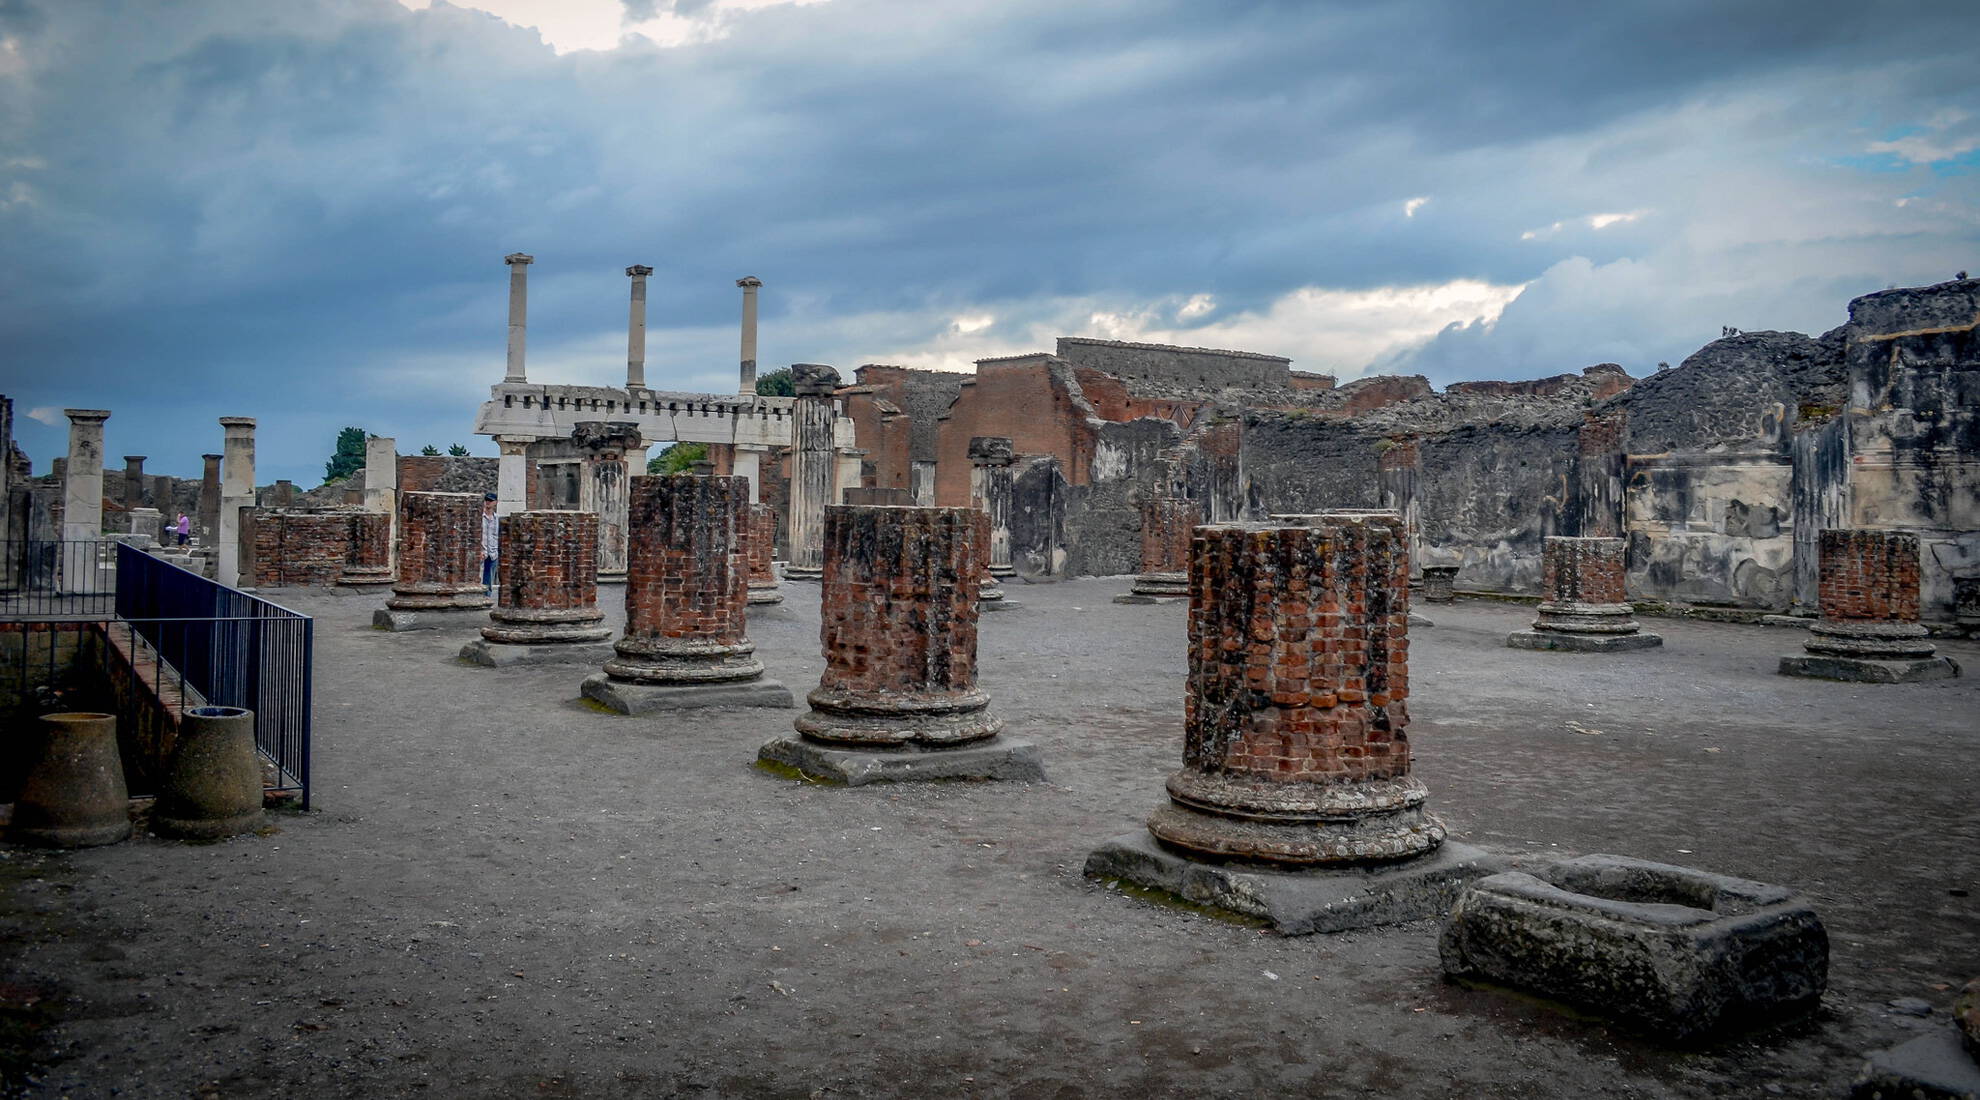 Pompeii - Vesuvius - Herculaneum port shore excursion 4